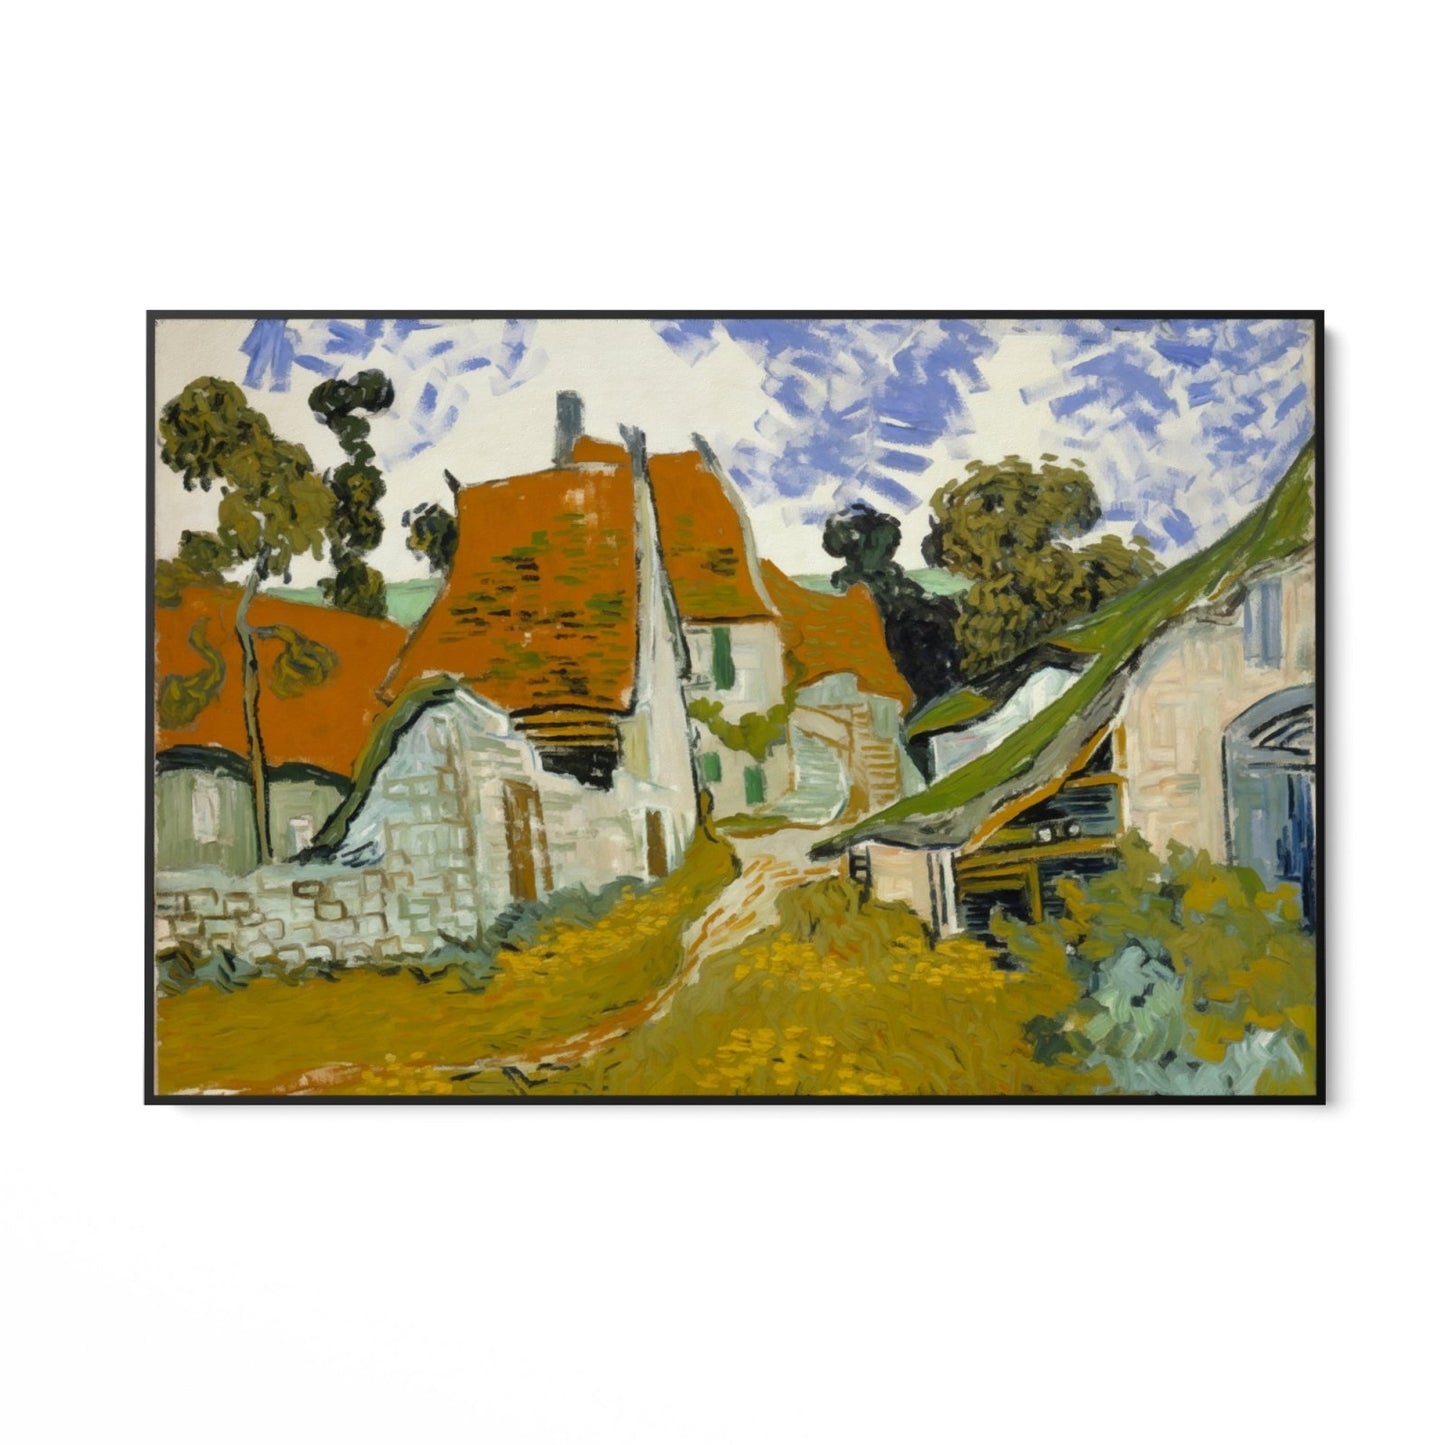 Utca Auvers-Sur-Oise-ban, Vincent Van Gogh